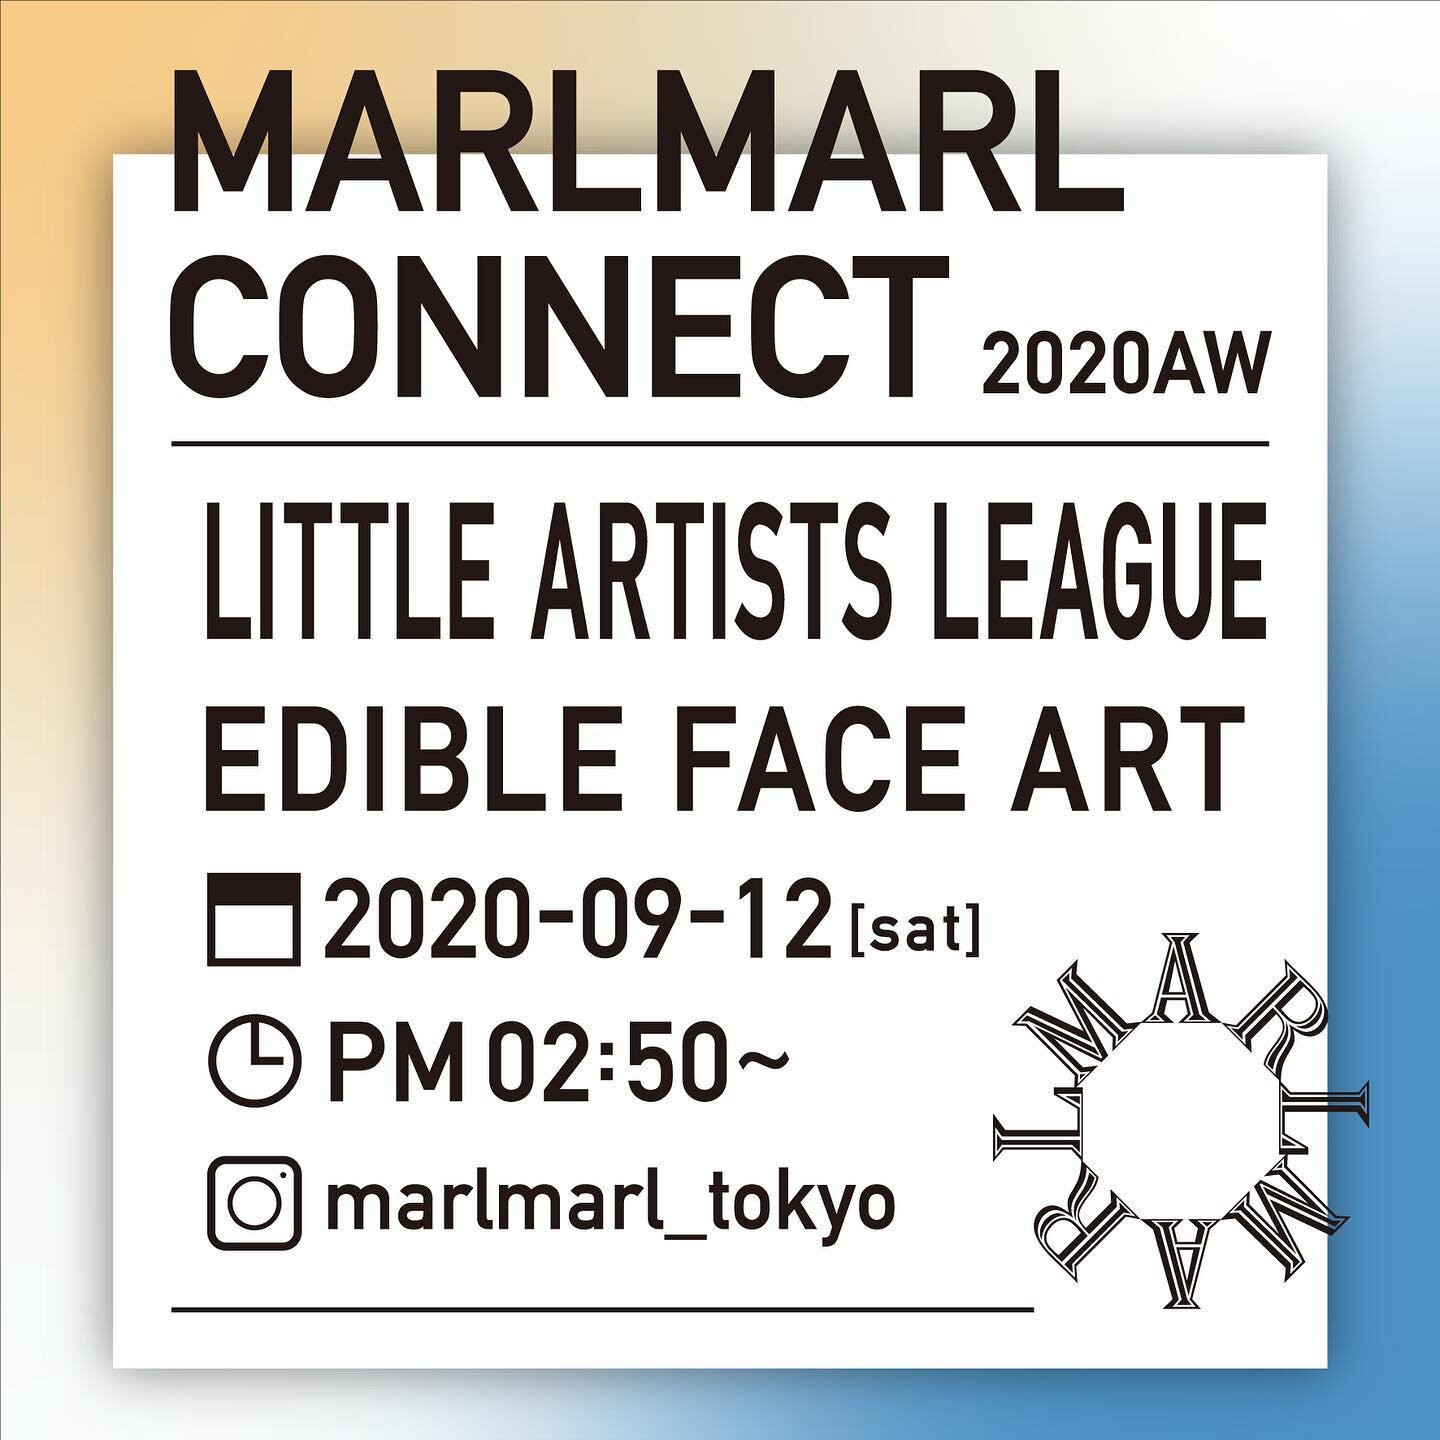 《 Invitation 》誰でも参加できる新しい展示会 &ldquo;MARLMARL CONNECT 2020AW&ldquo;

Little Artists Leagueが、昨年に引き続き　@marlmarl_tokyo さんのイベントに参加いたします！

2020年秋冬の展示会はインスタグラムライブにてオンライン生配信！

誰でも参加できる
どこに住んでいても
子どもとも一緒に楽しめる
開かれた展示会です。

展示会のテーマは共生。
私達も、多言語や多文化な環境